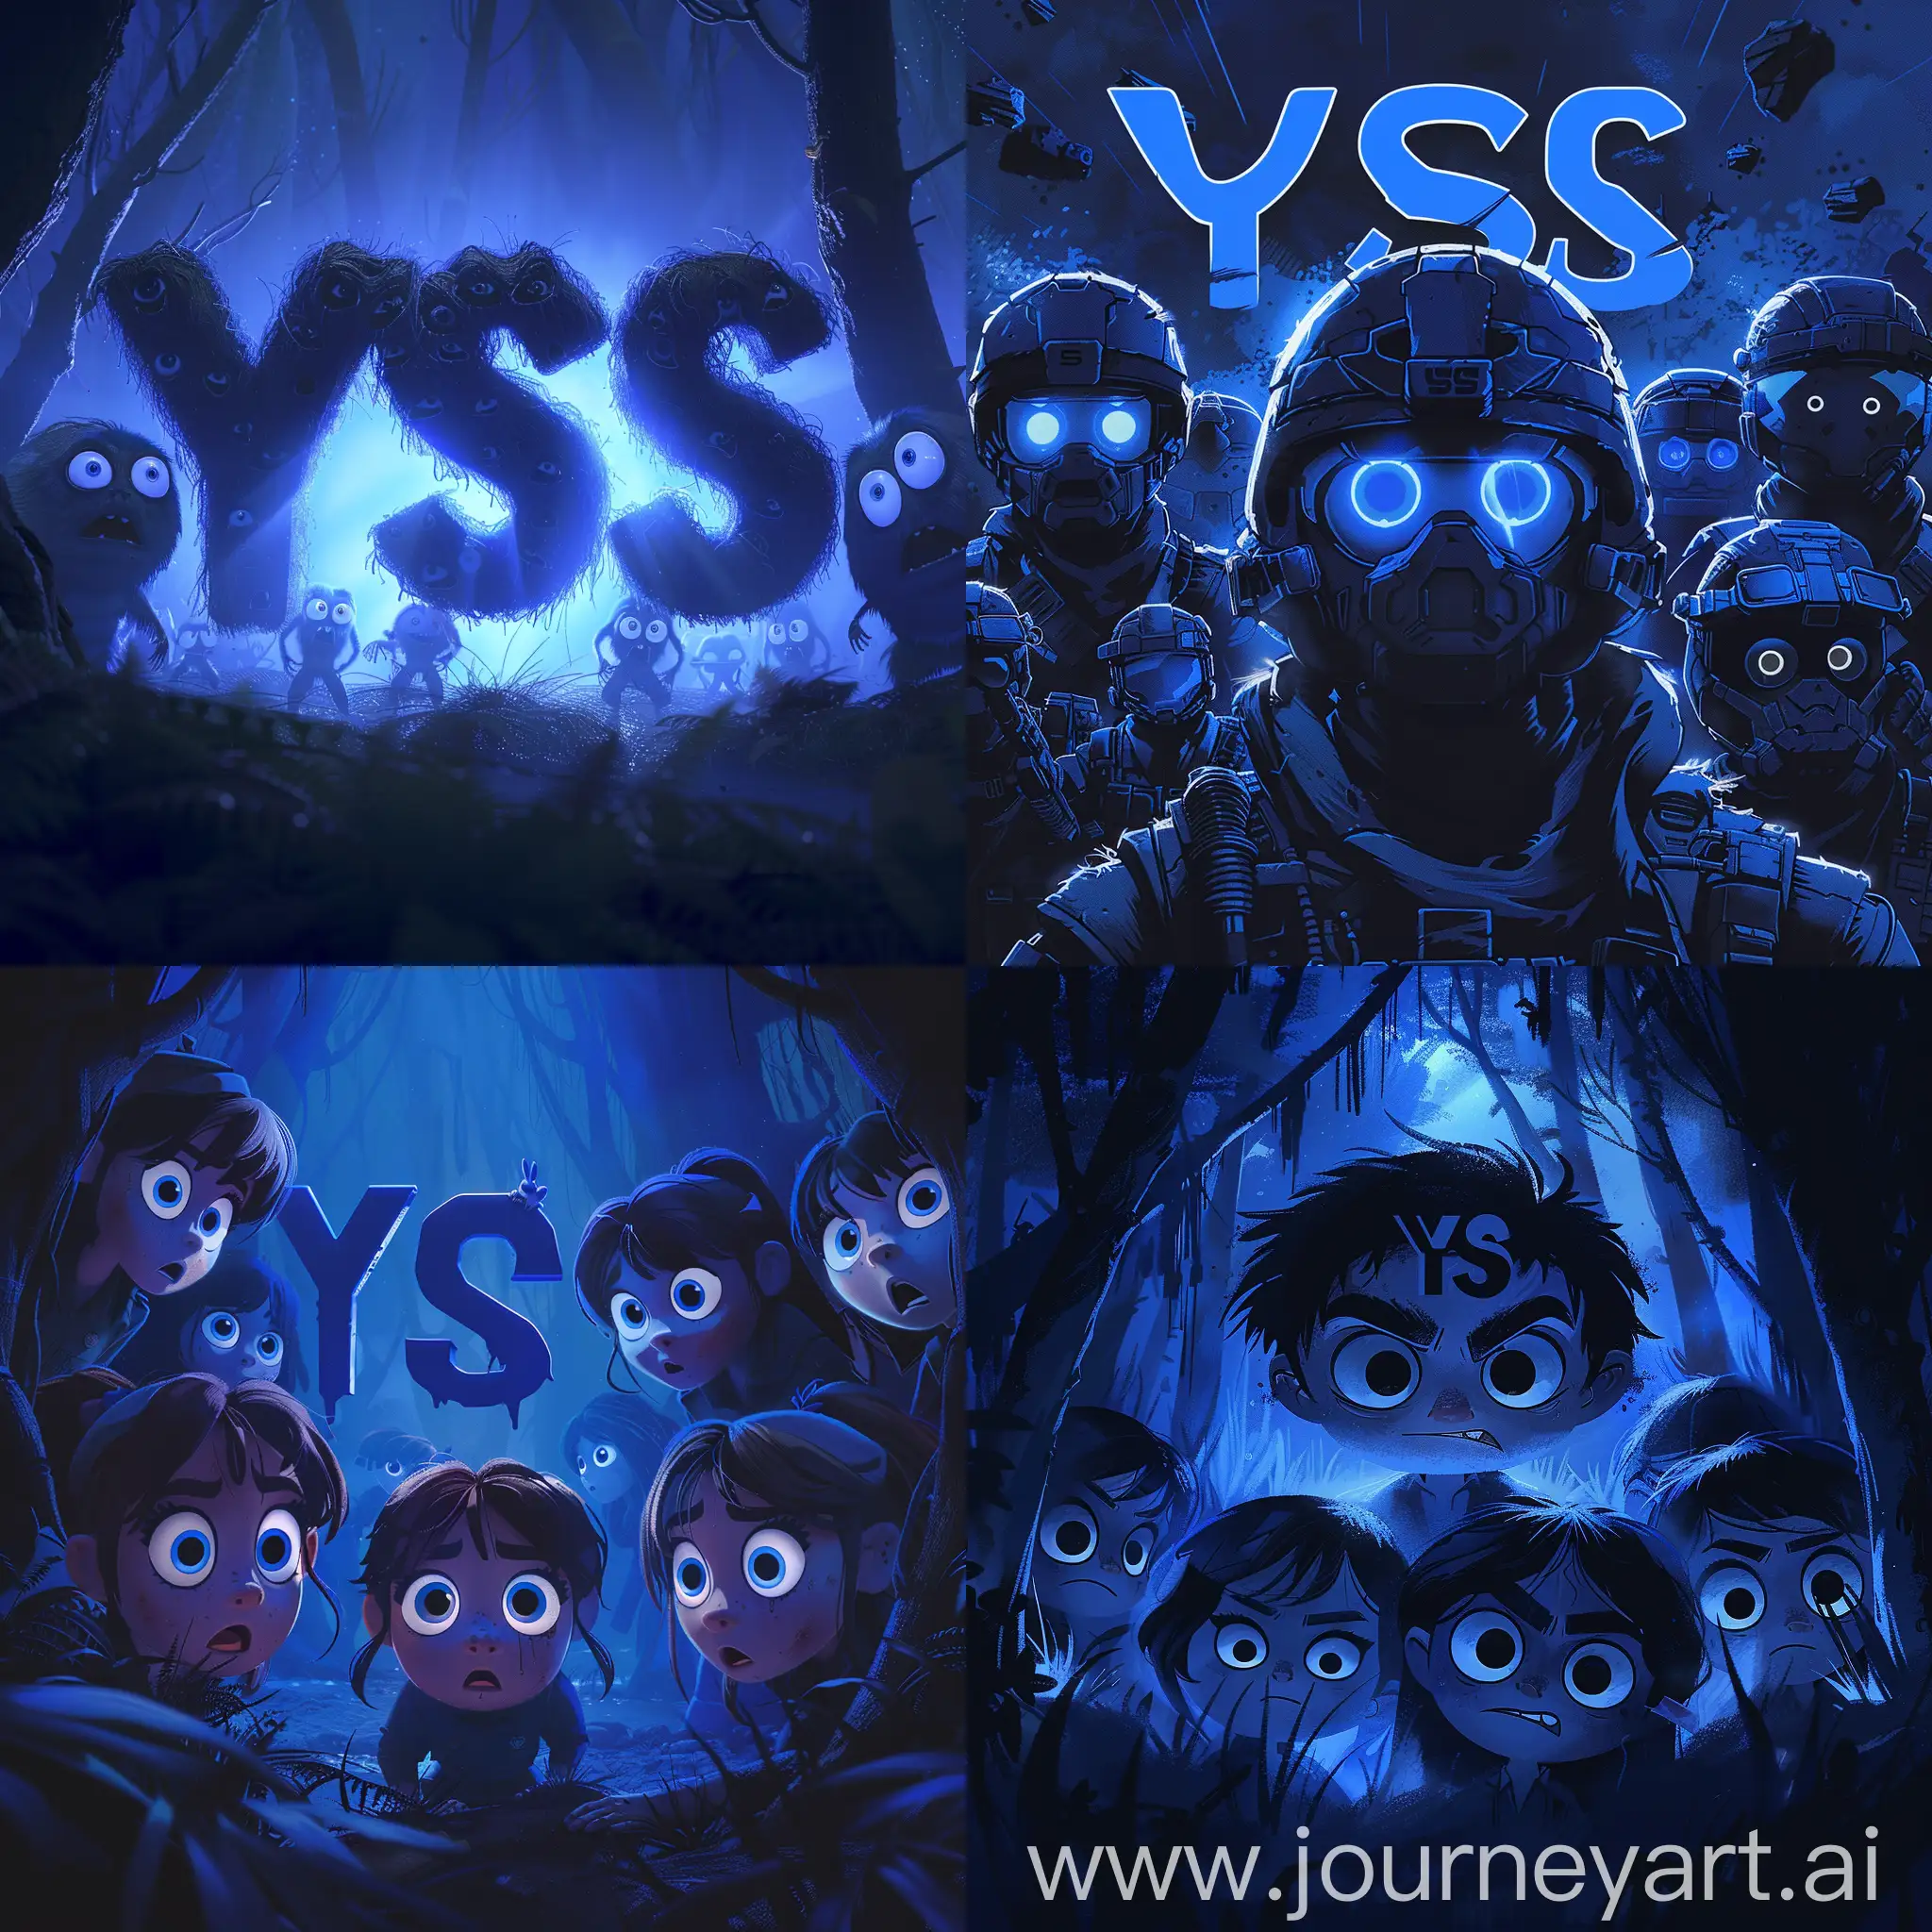 Темно-синие буквы "YSS", окруженные рейнджерами с большими глазами и туманными контурами, что придает образу таинственности и загадочности, --s 300